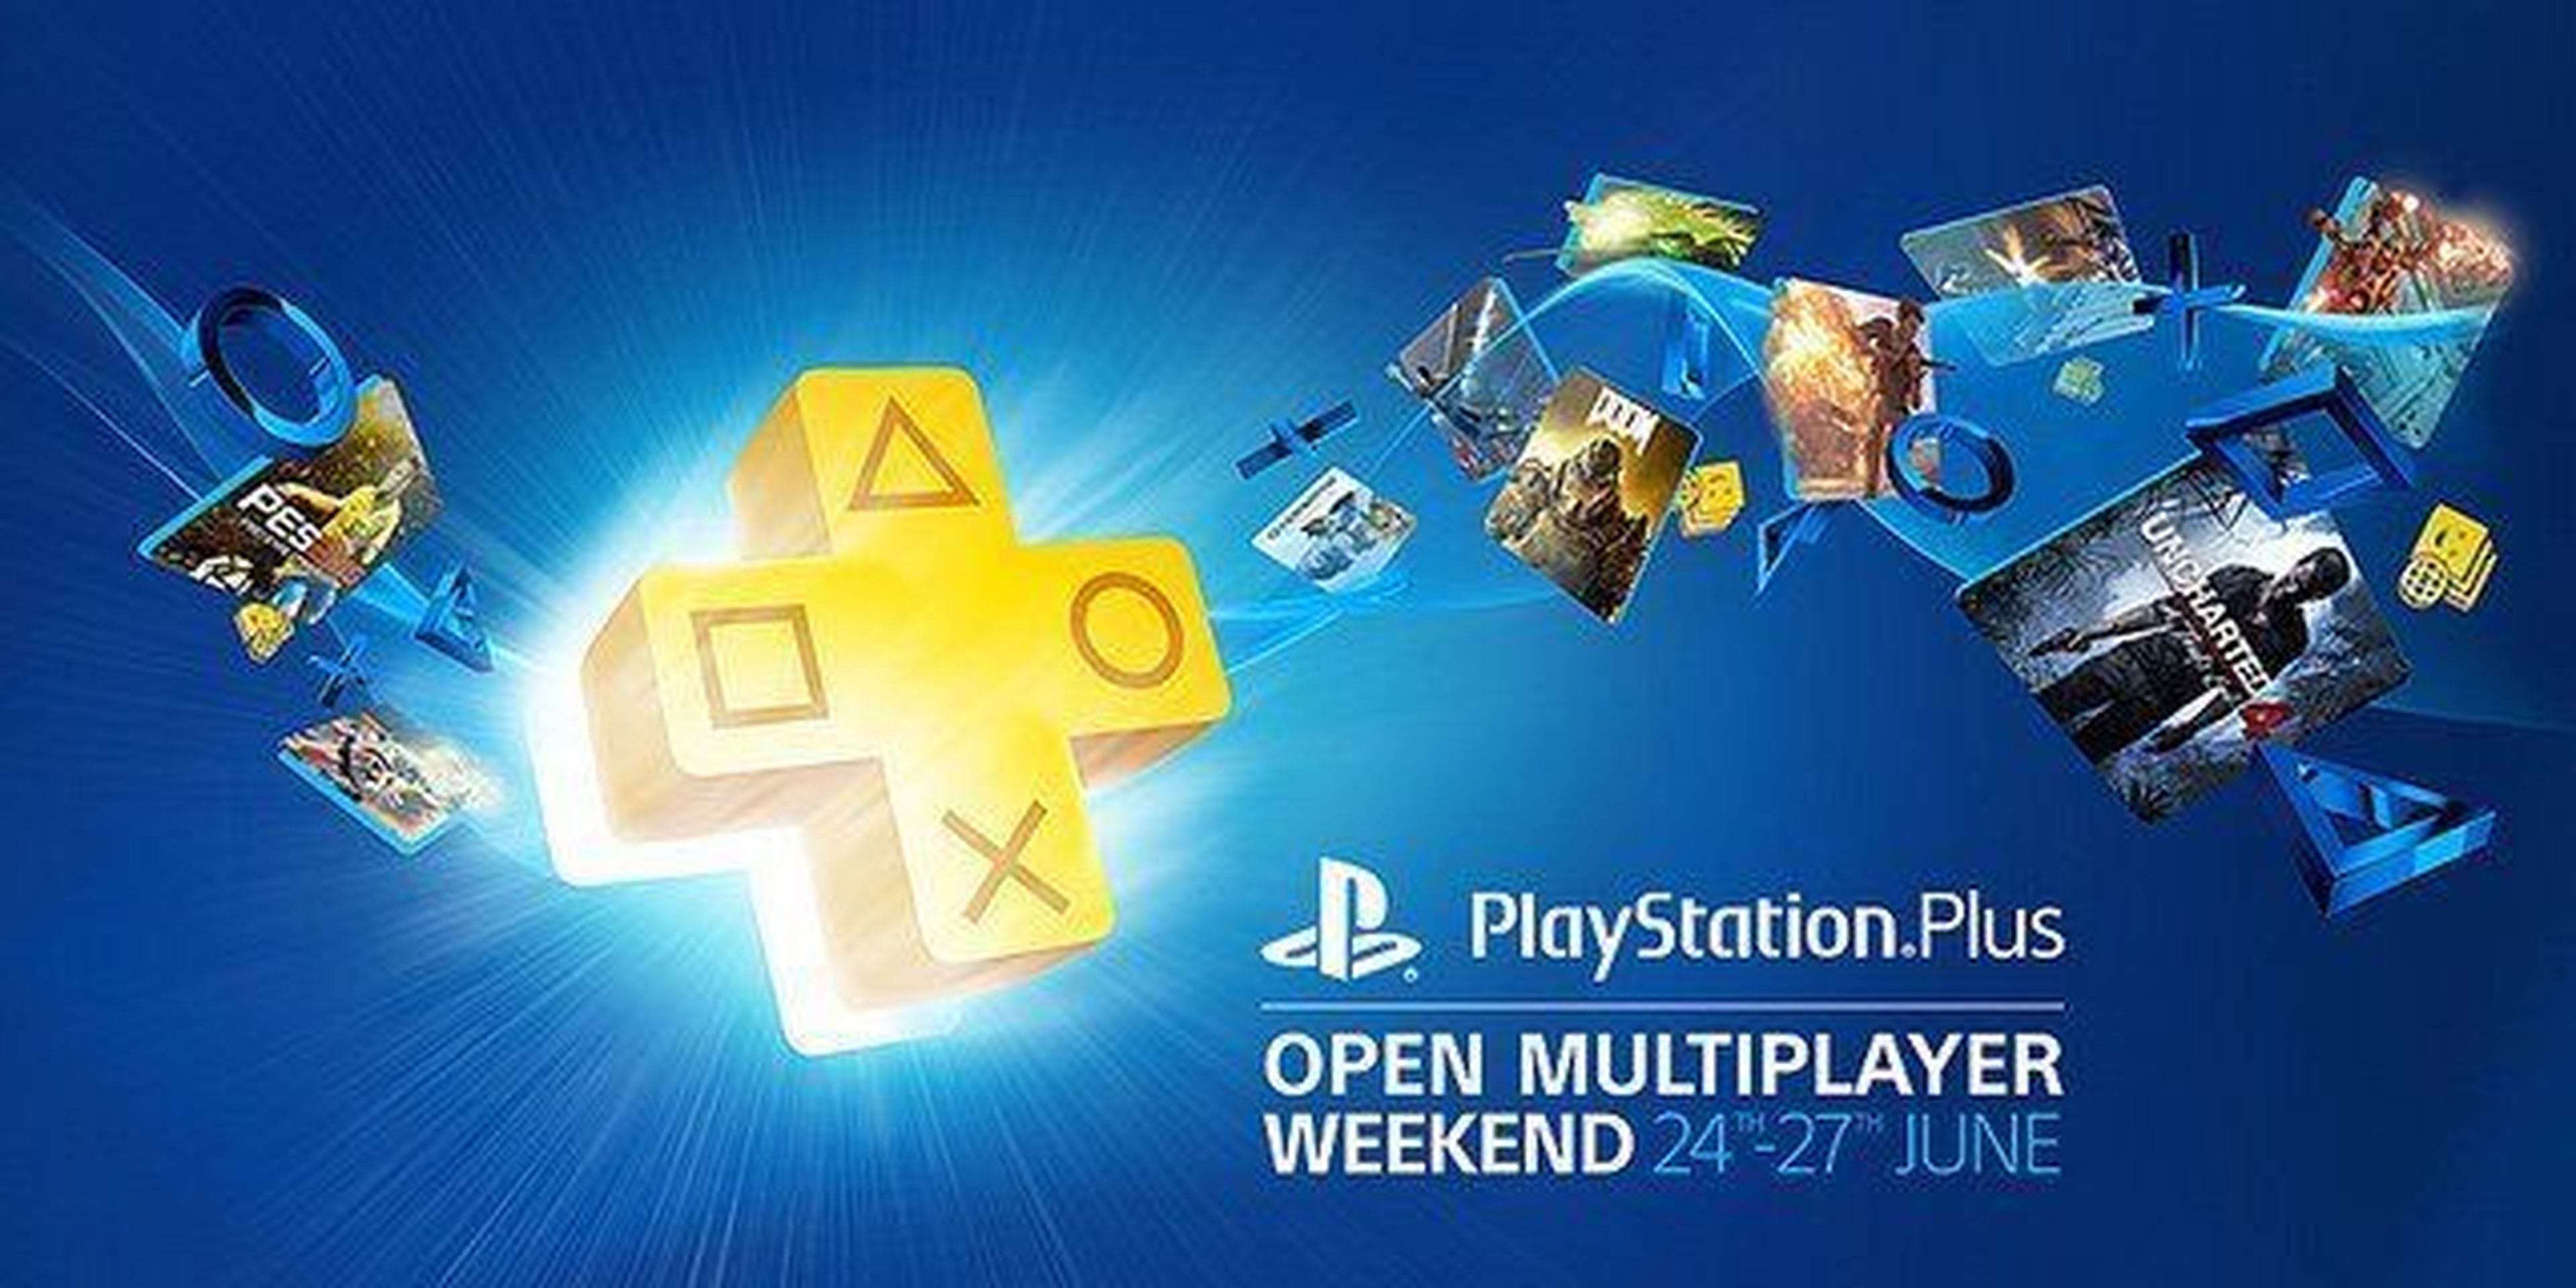 PS4 - Fin de semana multijugador gratuito